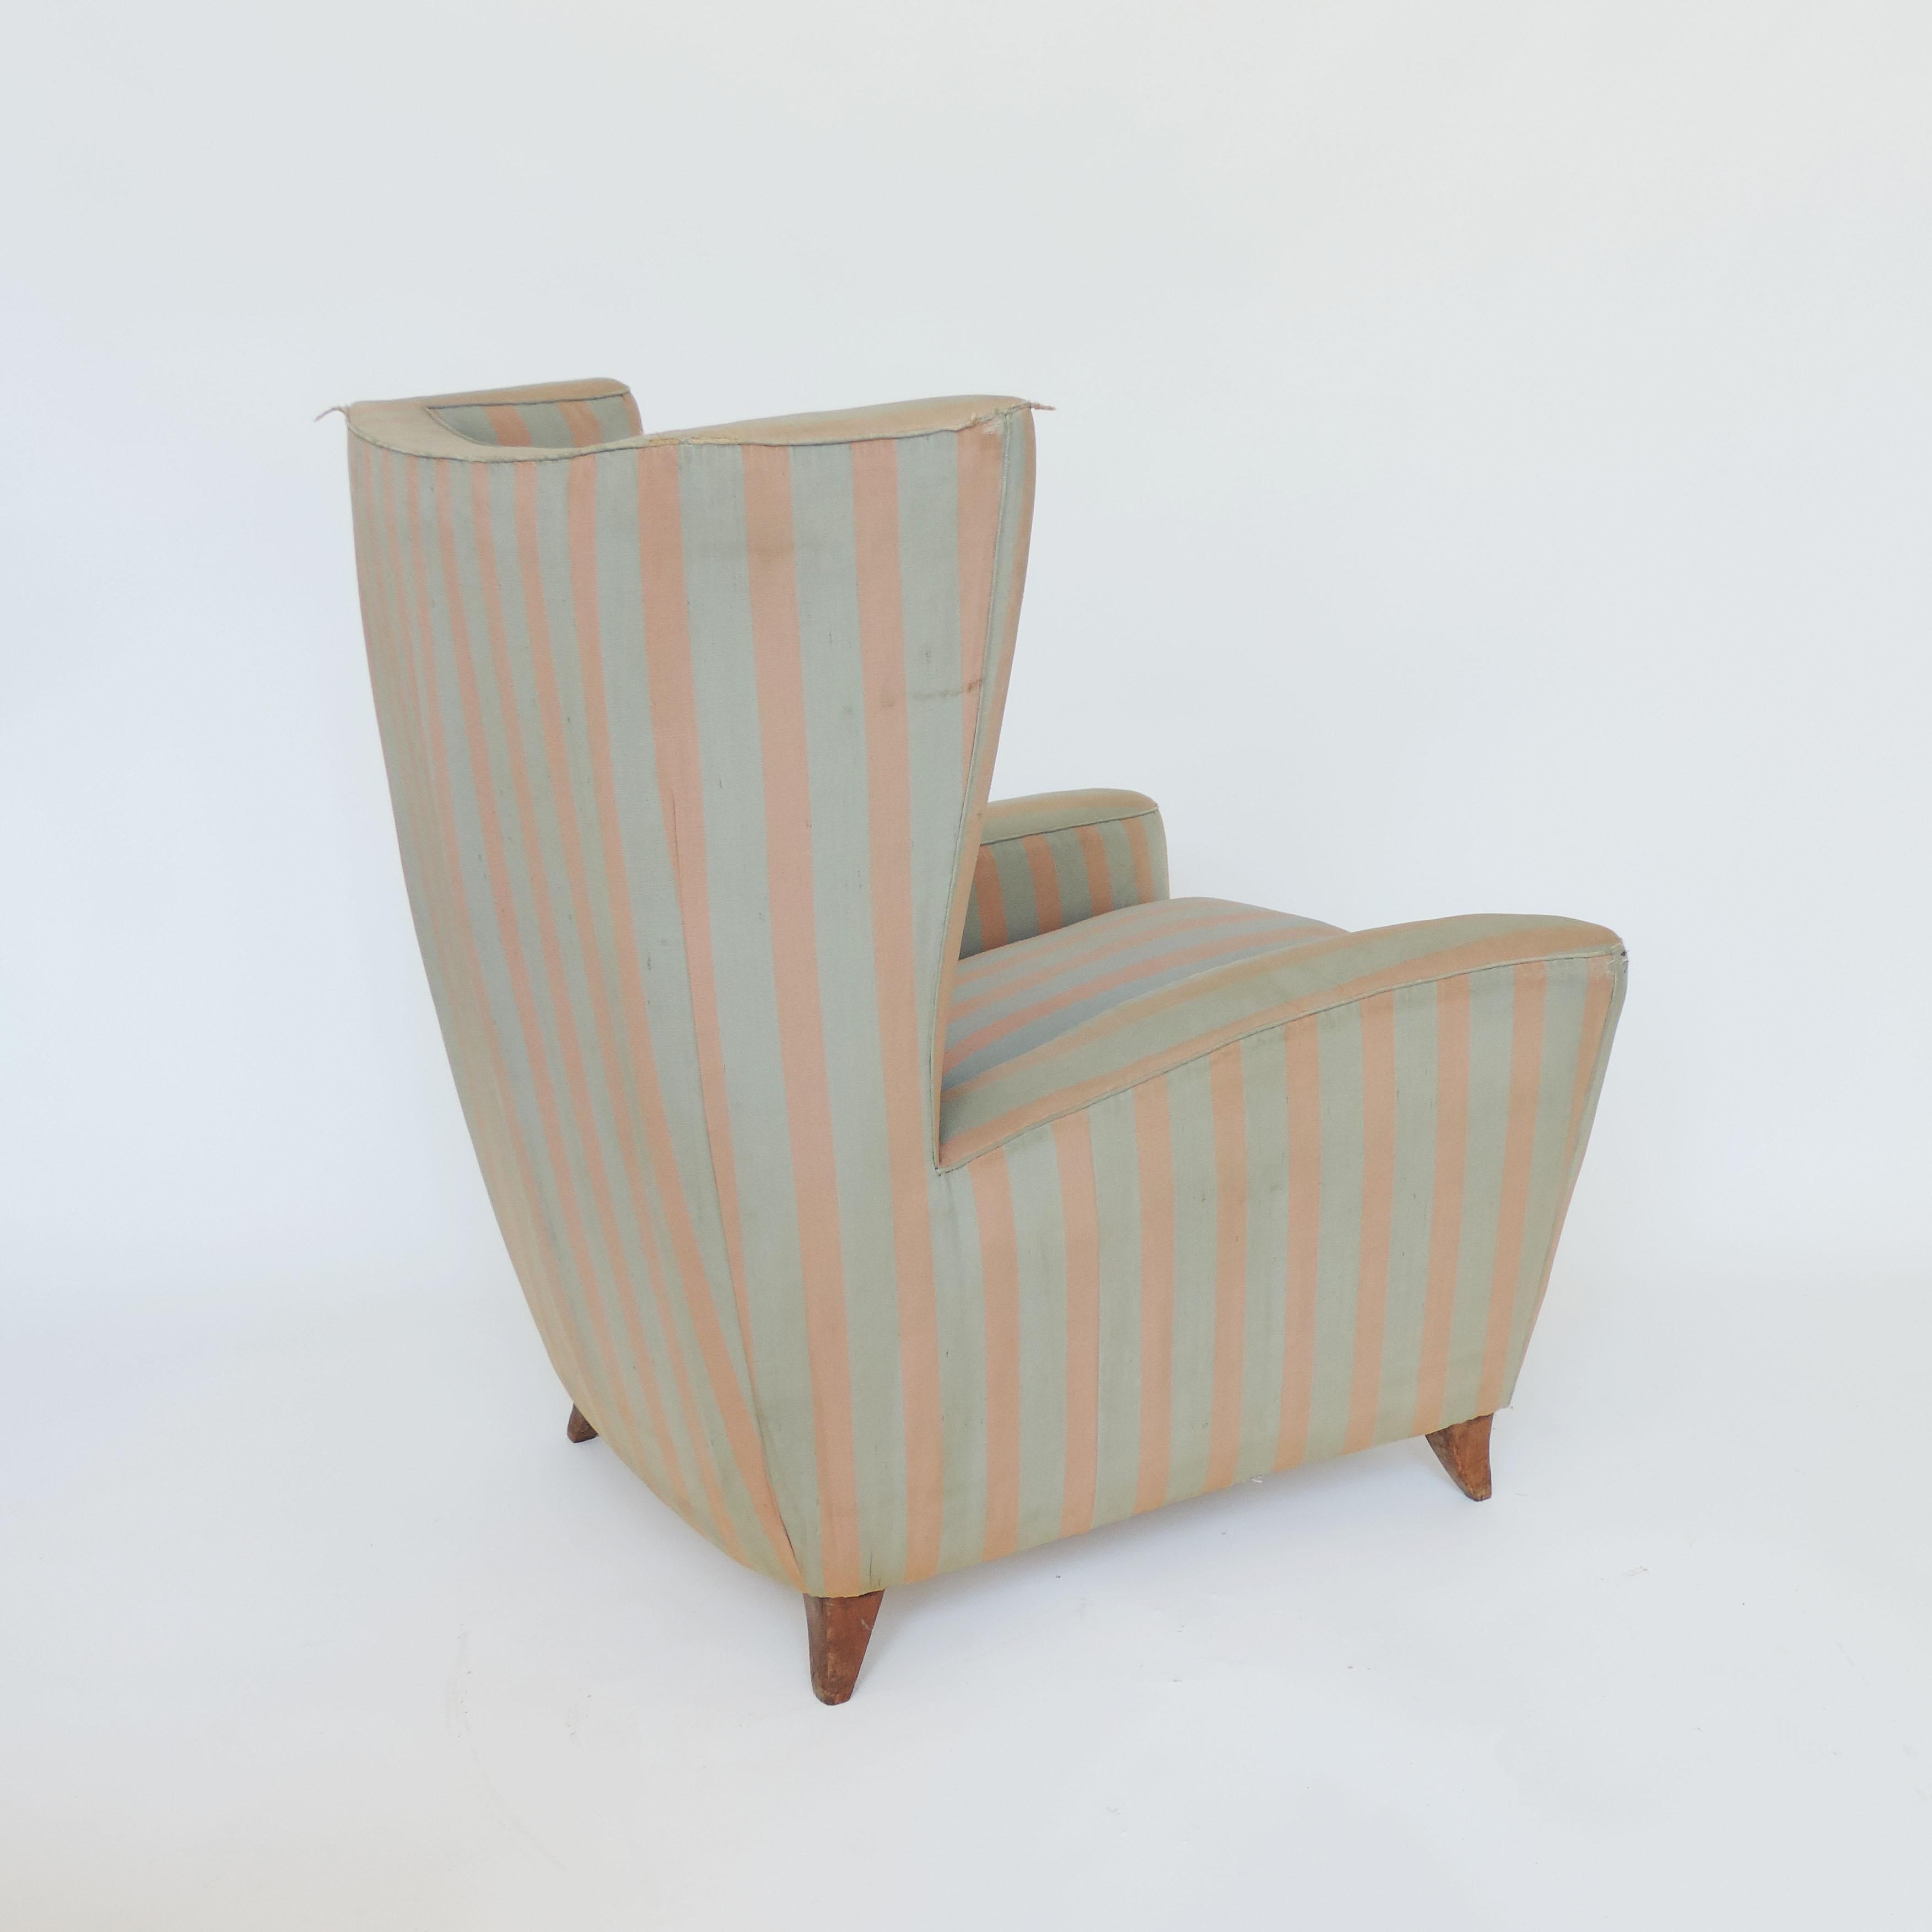 Ein spektakulärer Sessel von Paolo Buffa aus den 1940er Jahren mit Originalstoff.
Alles original. Unberührt.